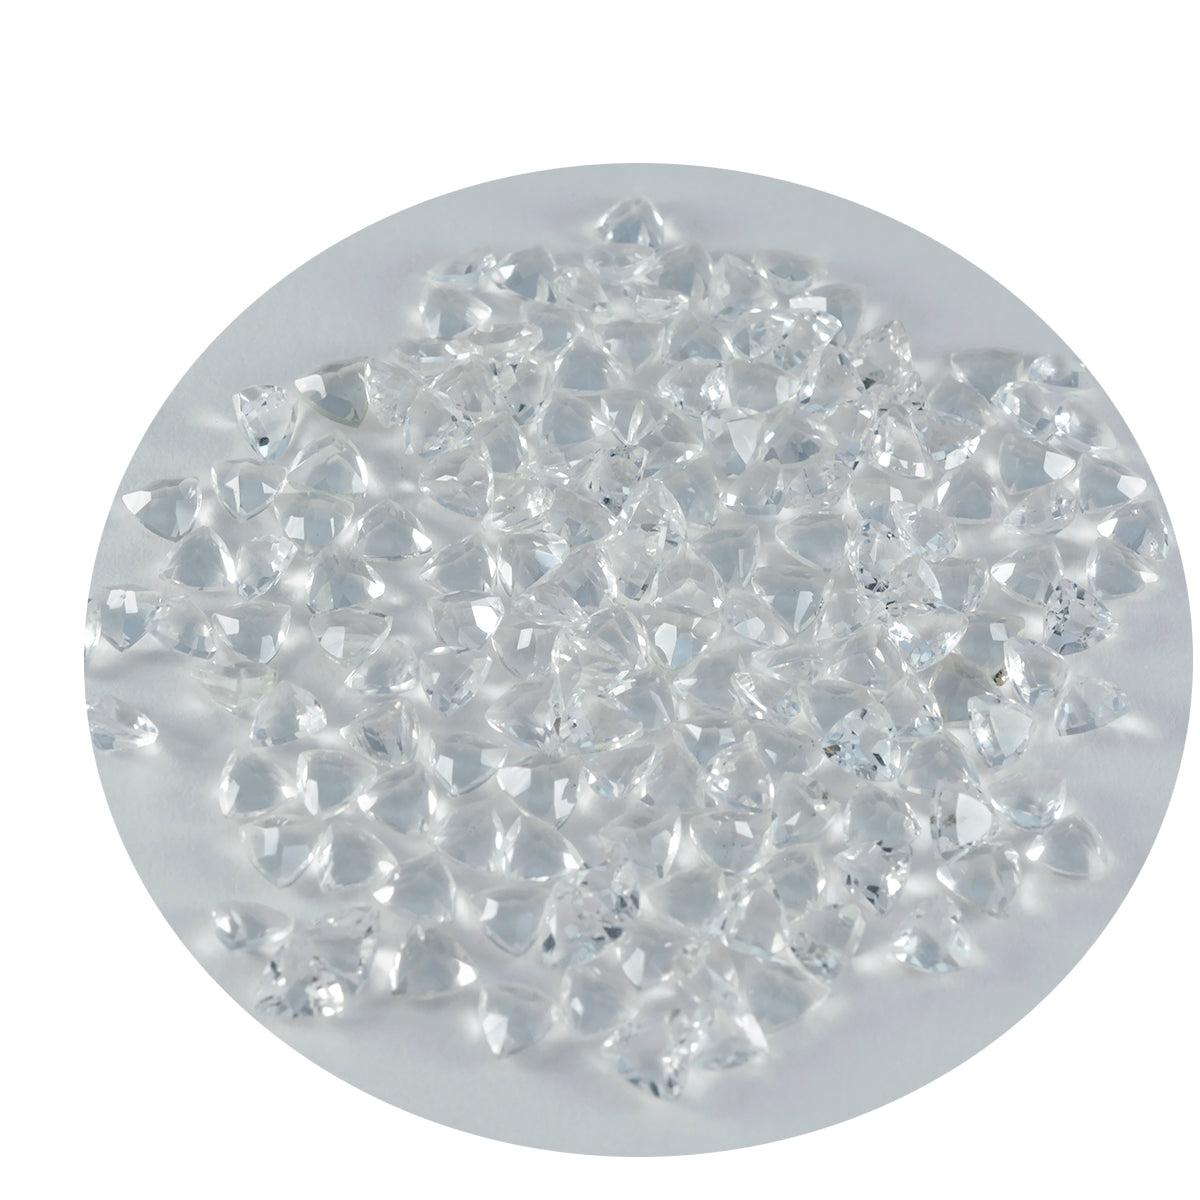 riyogems 1 шт., белый кристалл кварца, ограненный 4x4 мм, форма триллиона, драгоценный камень потрясающего качества